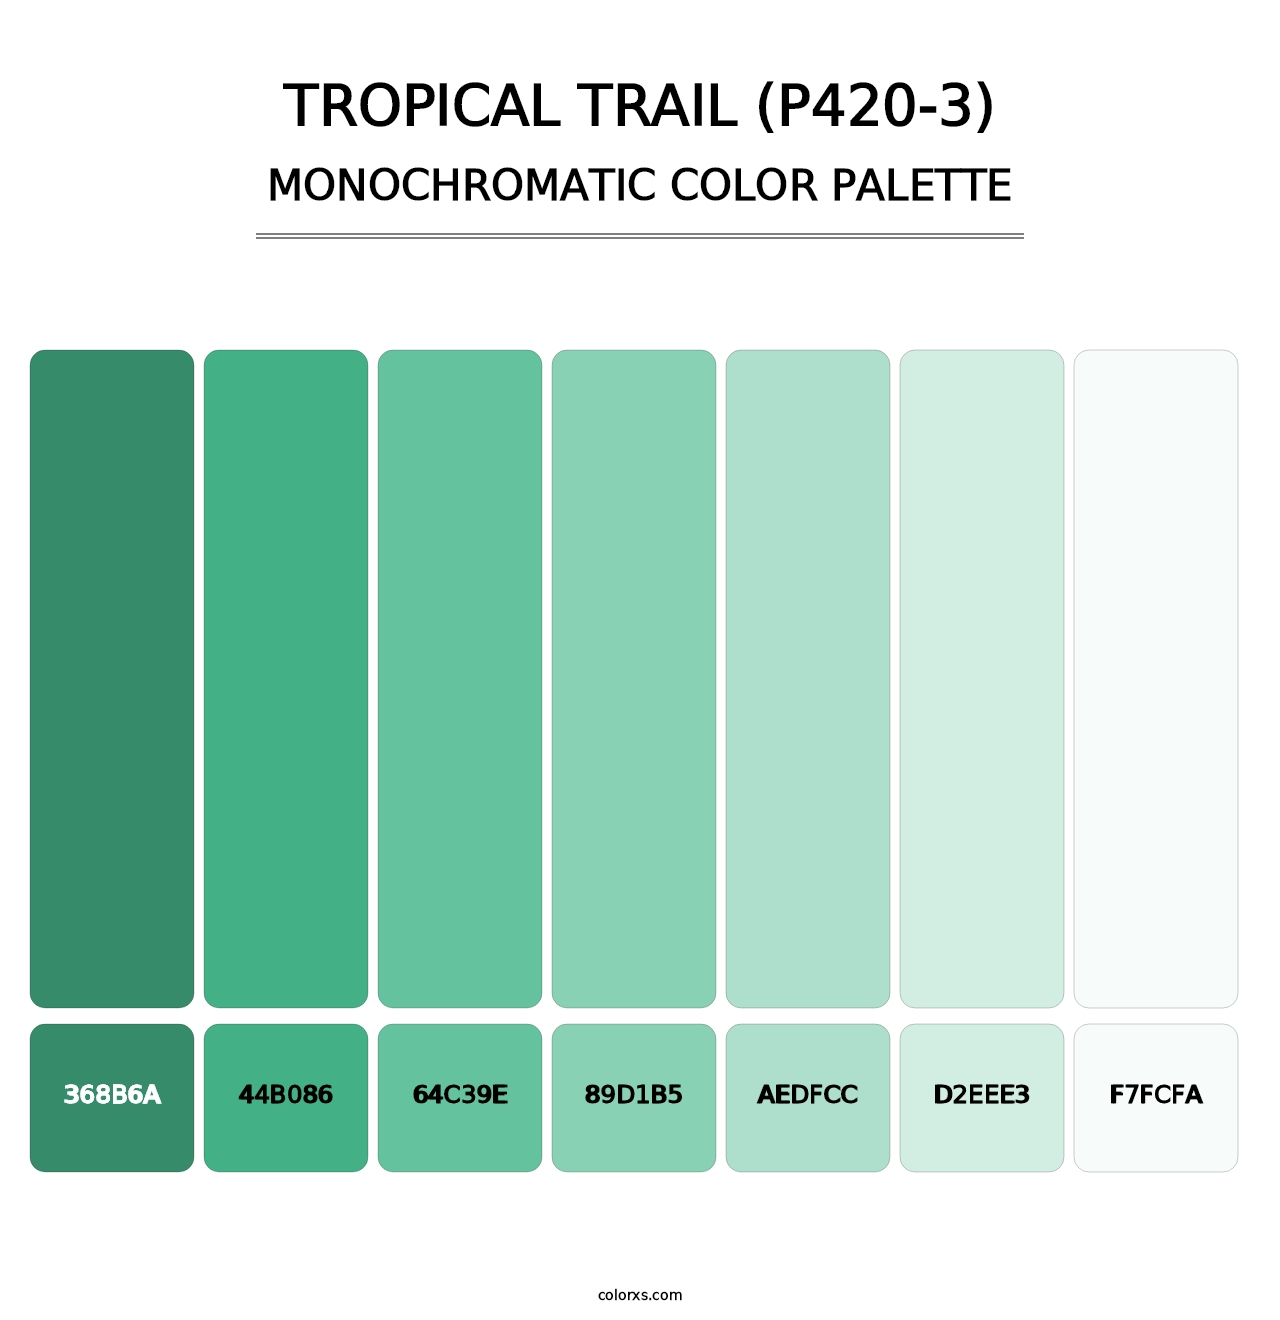 Tropical Trail (P420-3) - Monochromatic Color Palette